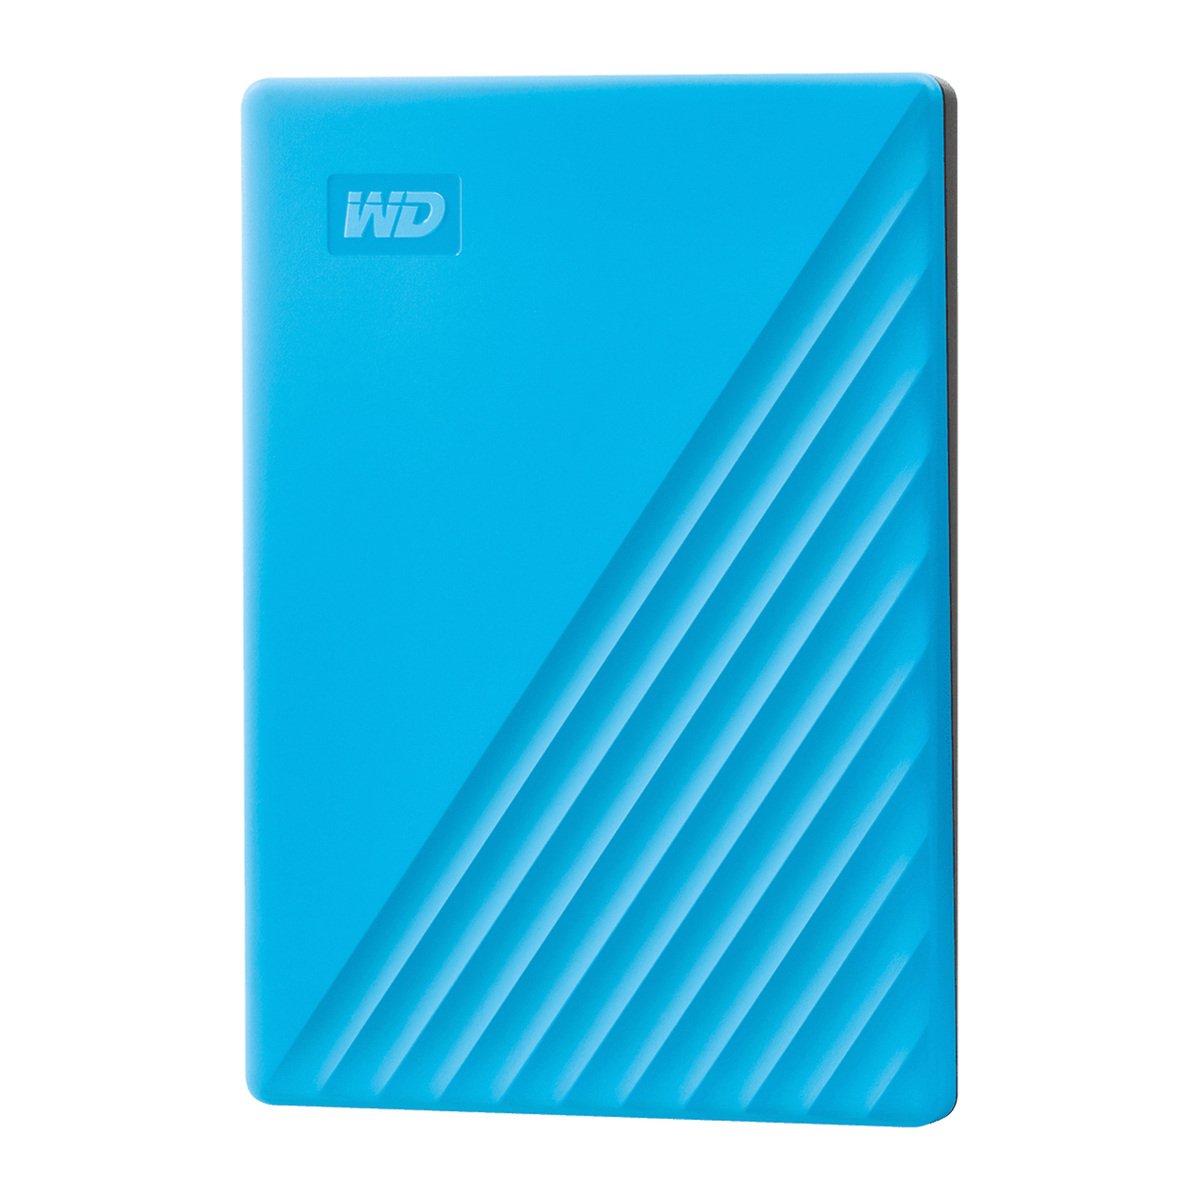 Western Digital My Passport 4TB Portable Hard Drive WDBPKJ0040B 4TB Blue